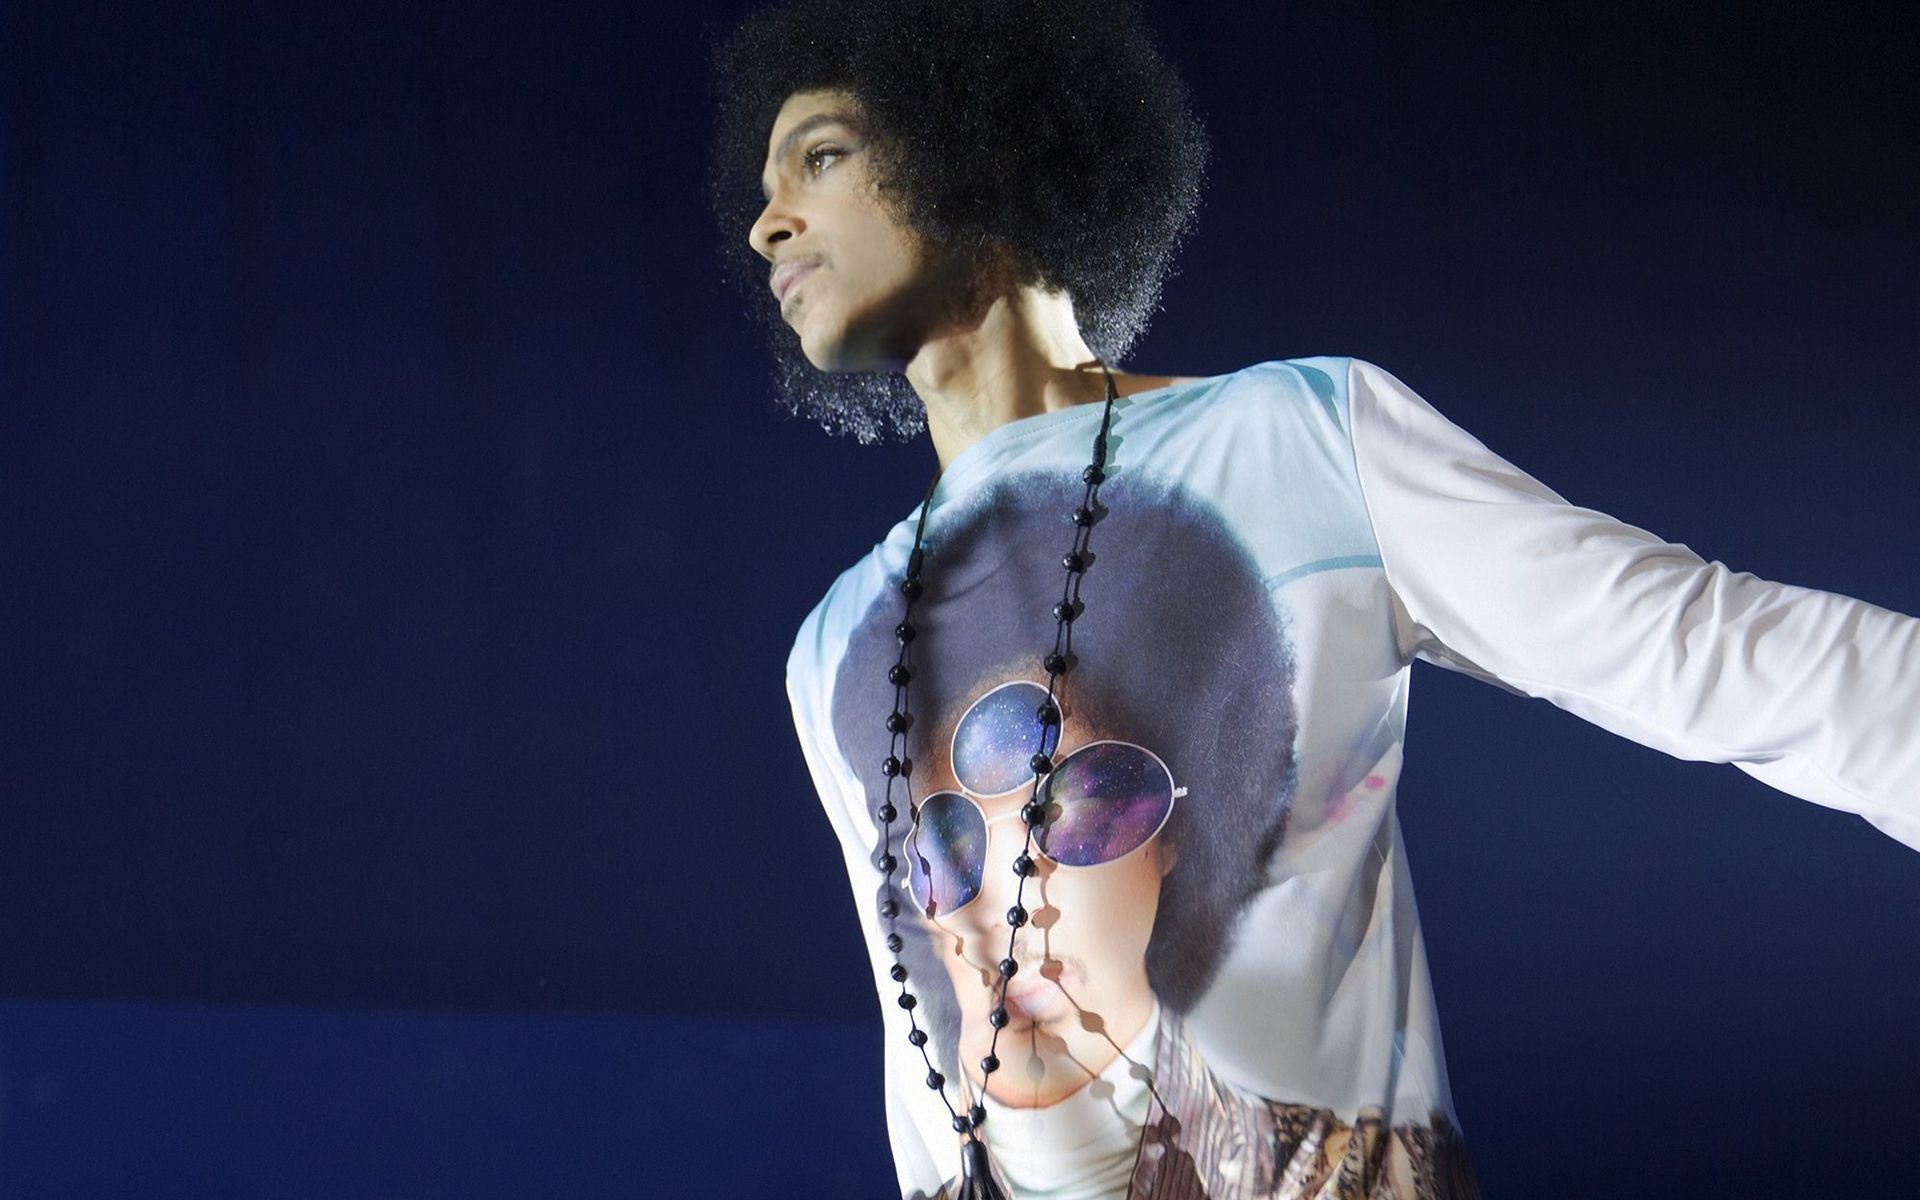 prince fond d'écran hd,performance,mode,dessin de mode,mannequin,humain